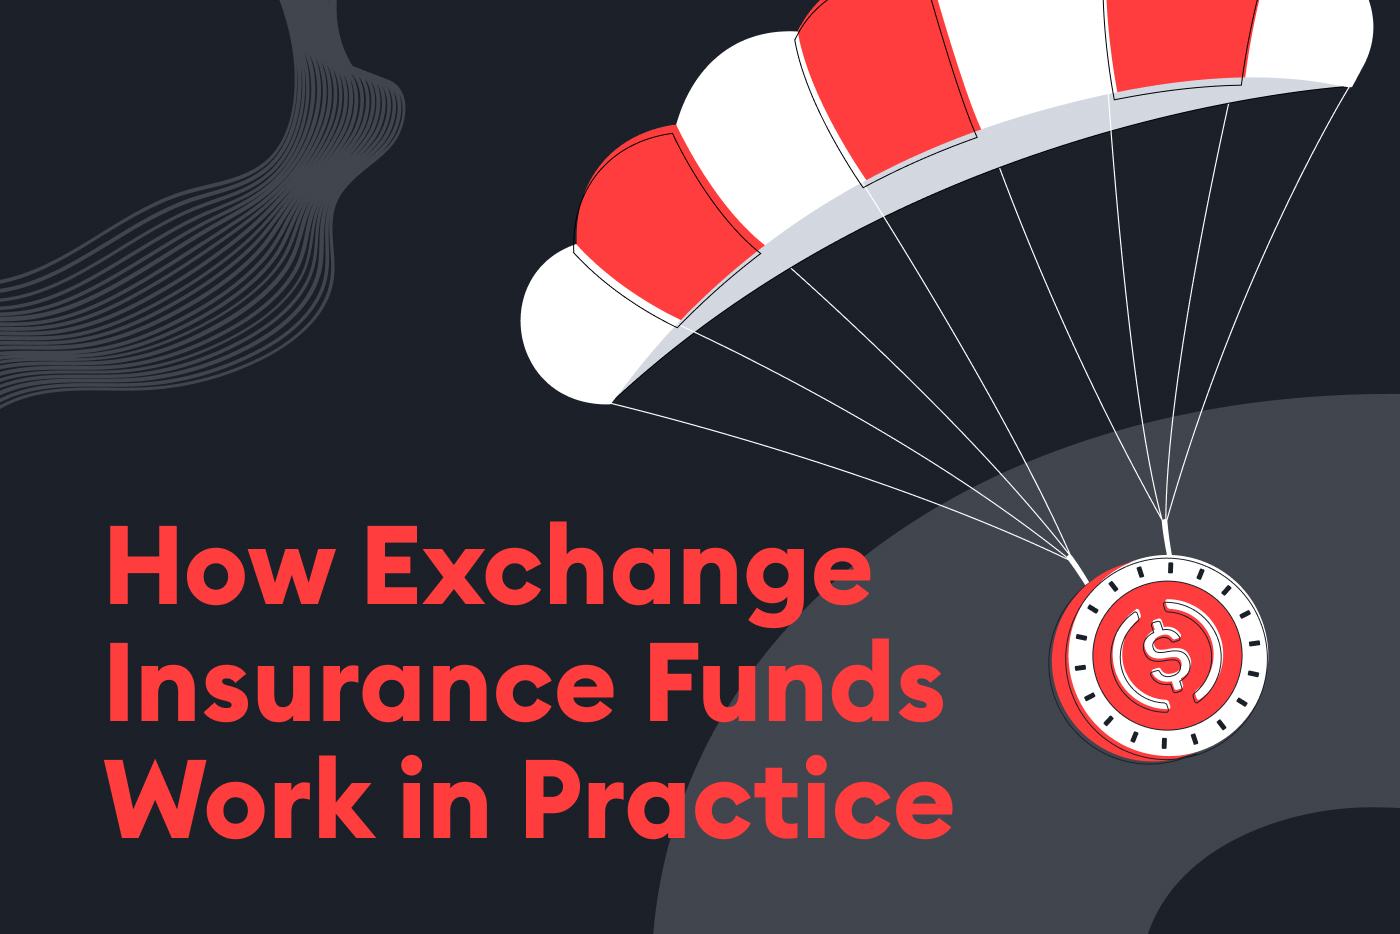 How exchange insurance funds work in practice